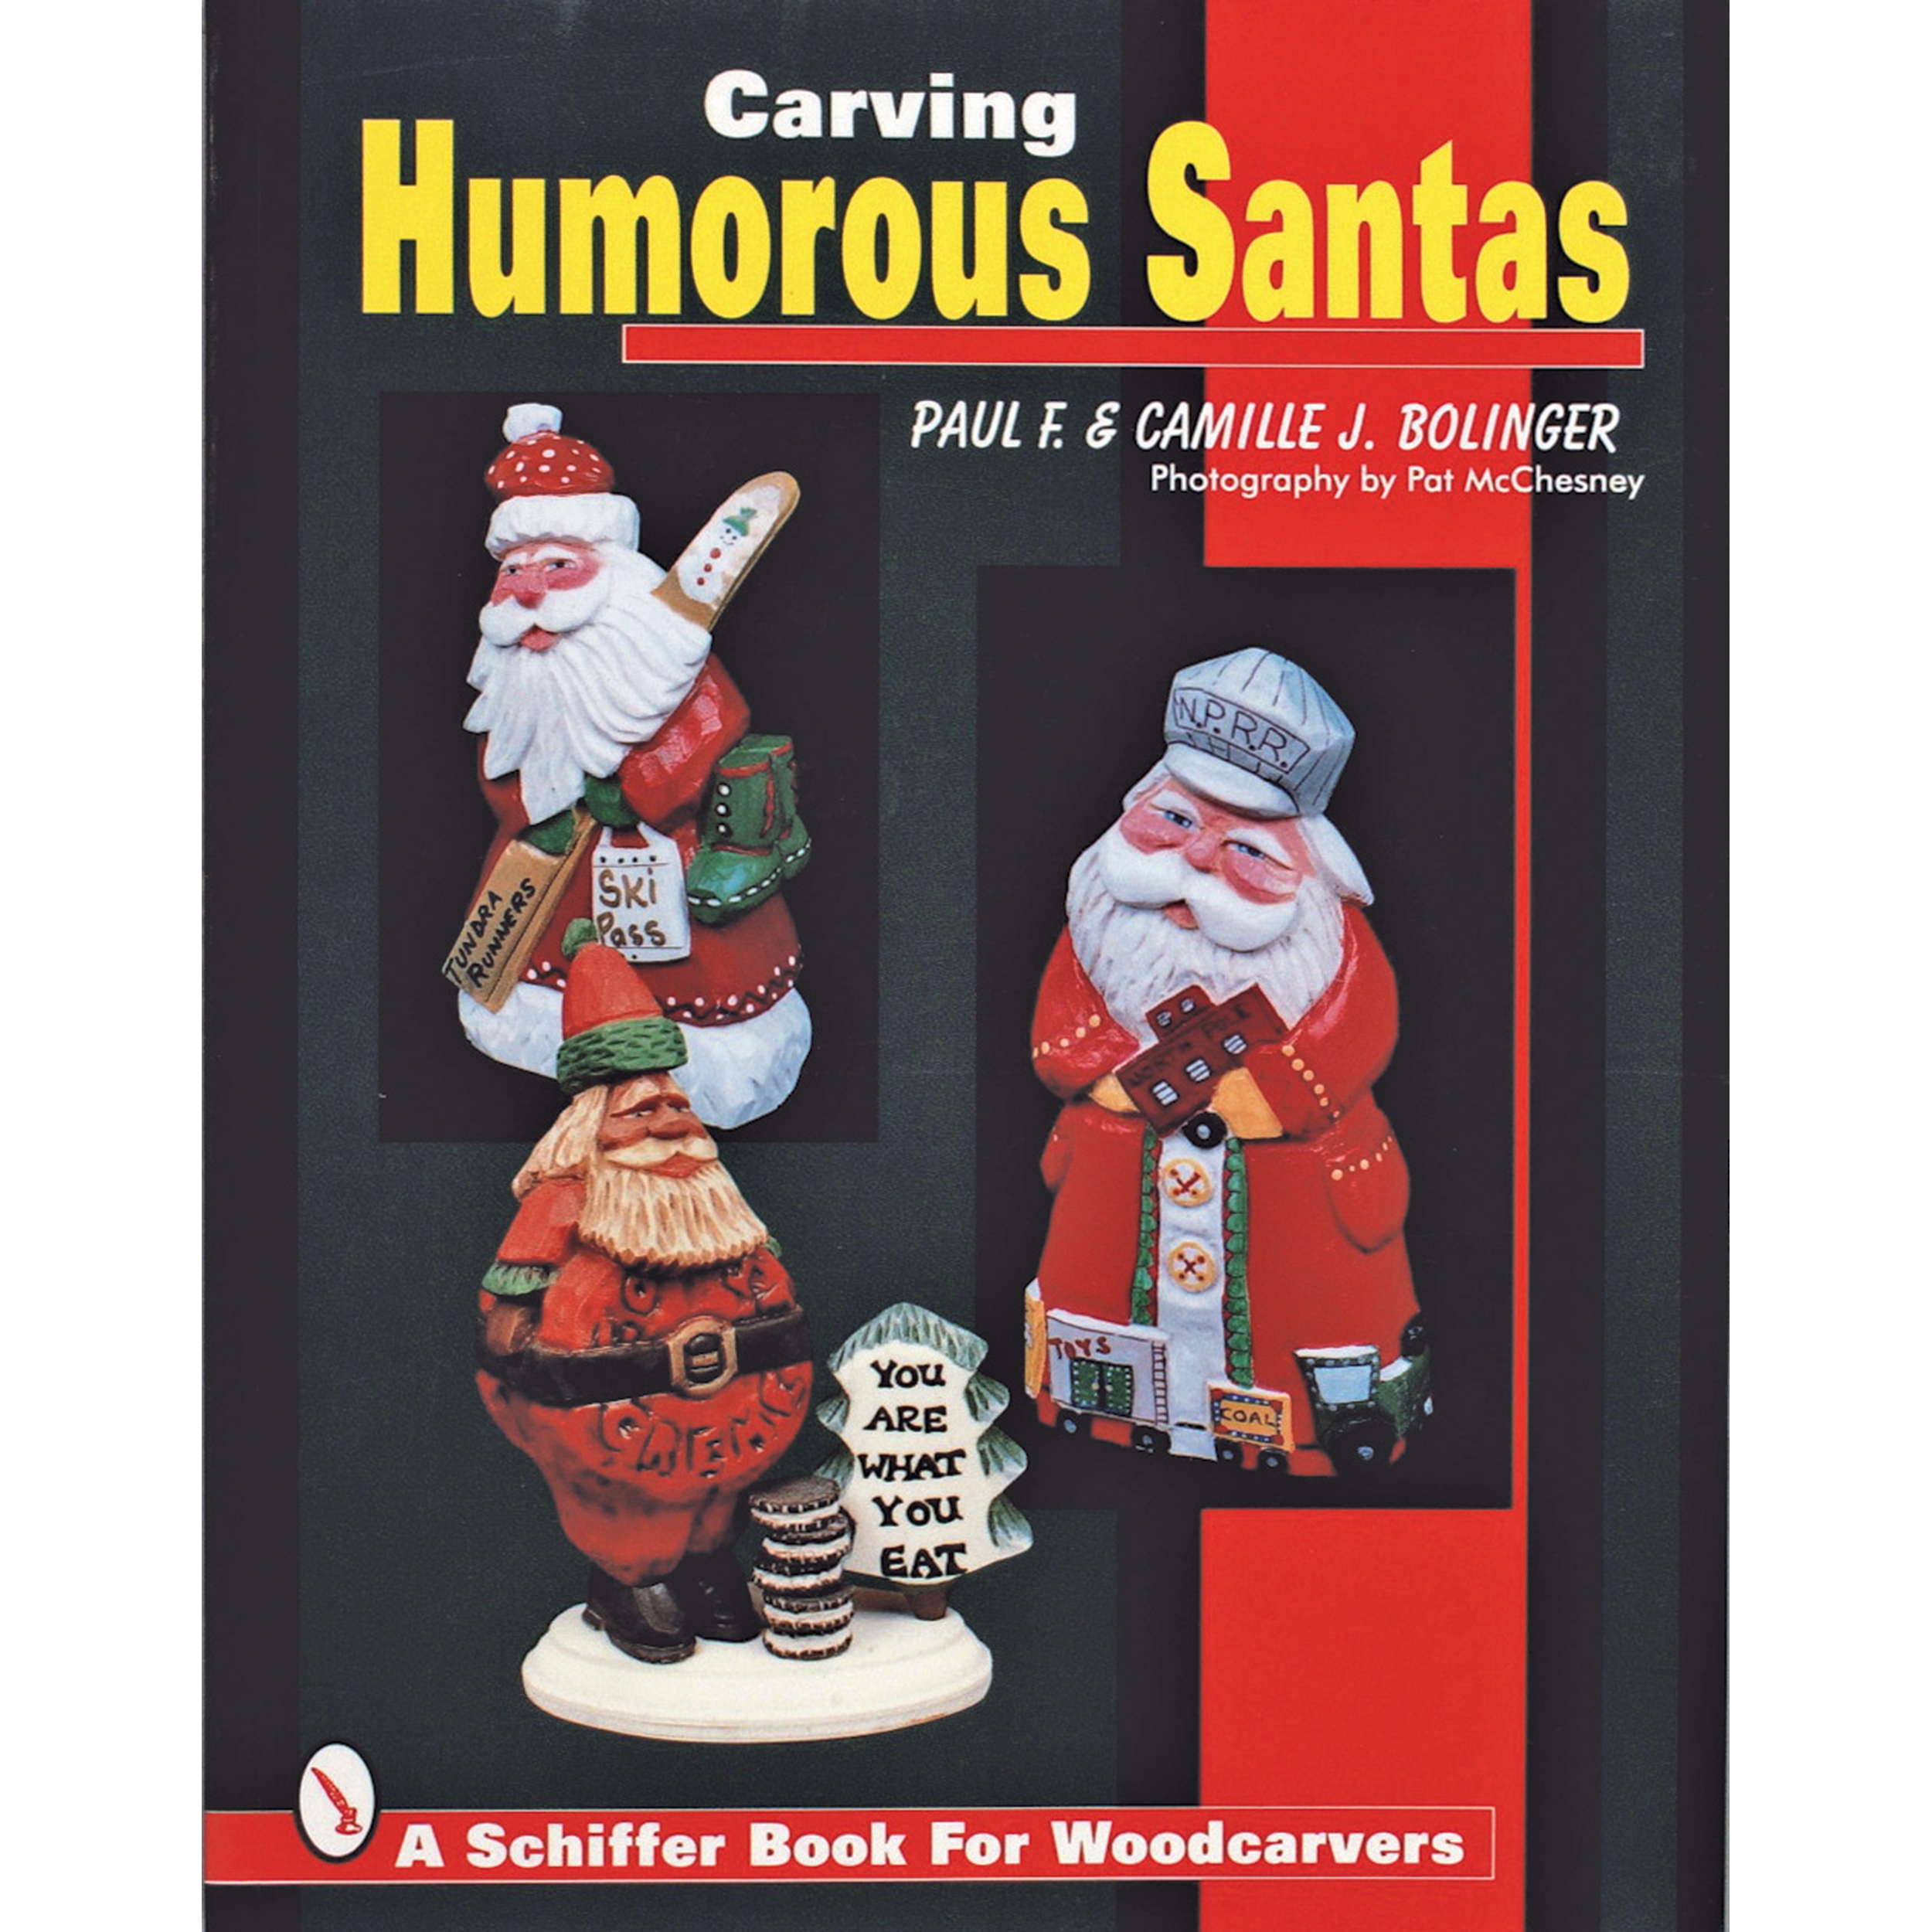 Carving Humorous Santas